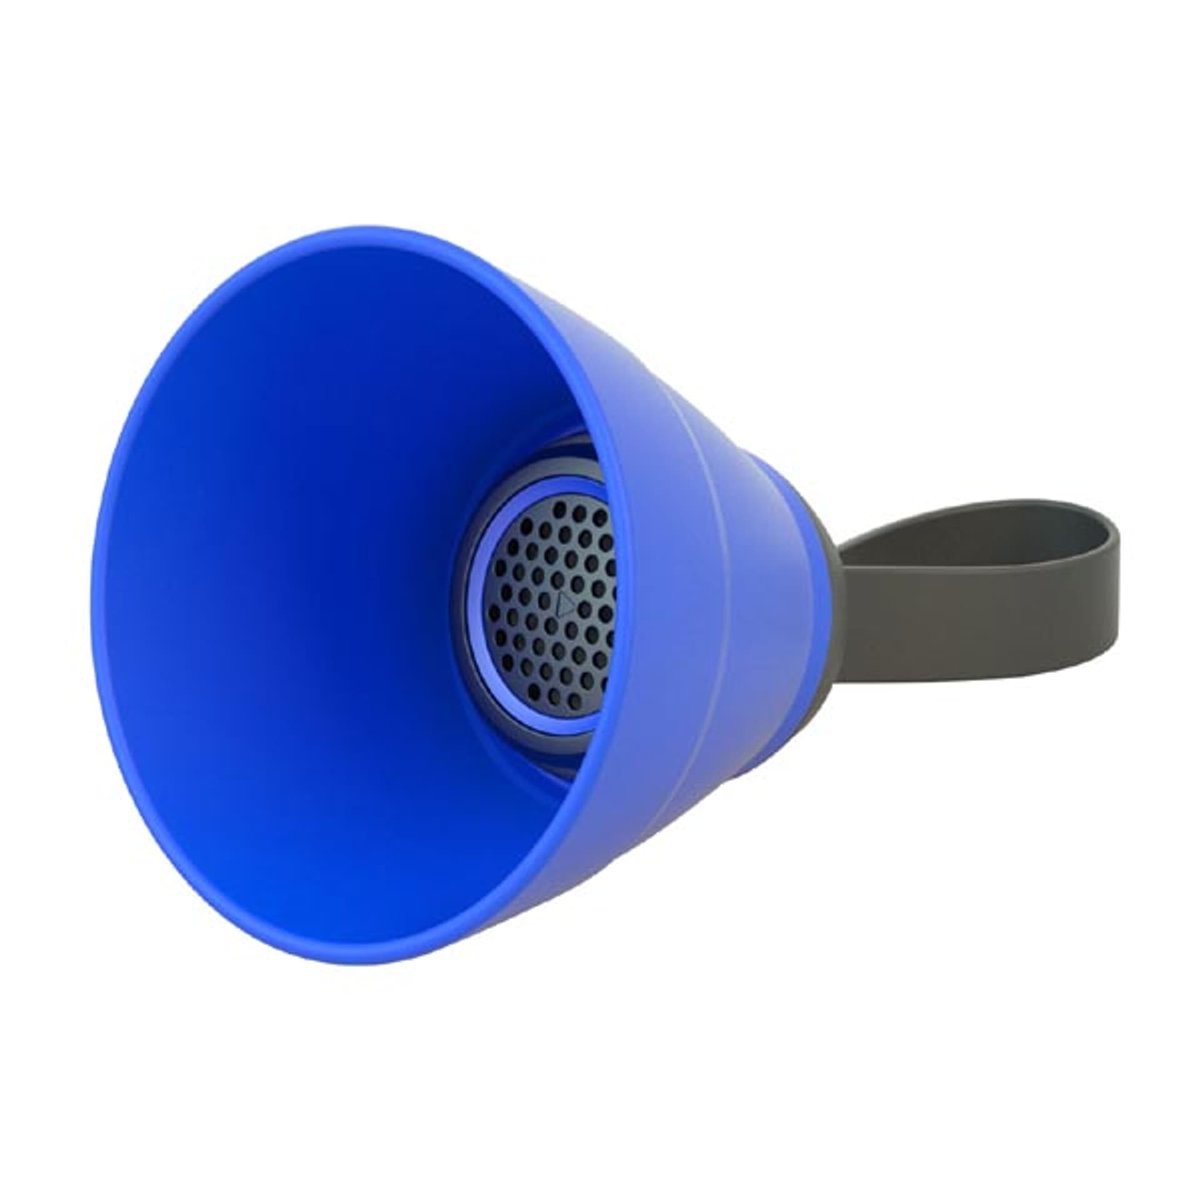 Zdjęcia - Głośniki samochodowe YZSY Głośnik bluetooth SALI, 1.0, 3W, niebieski, regulacja głośności, skła